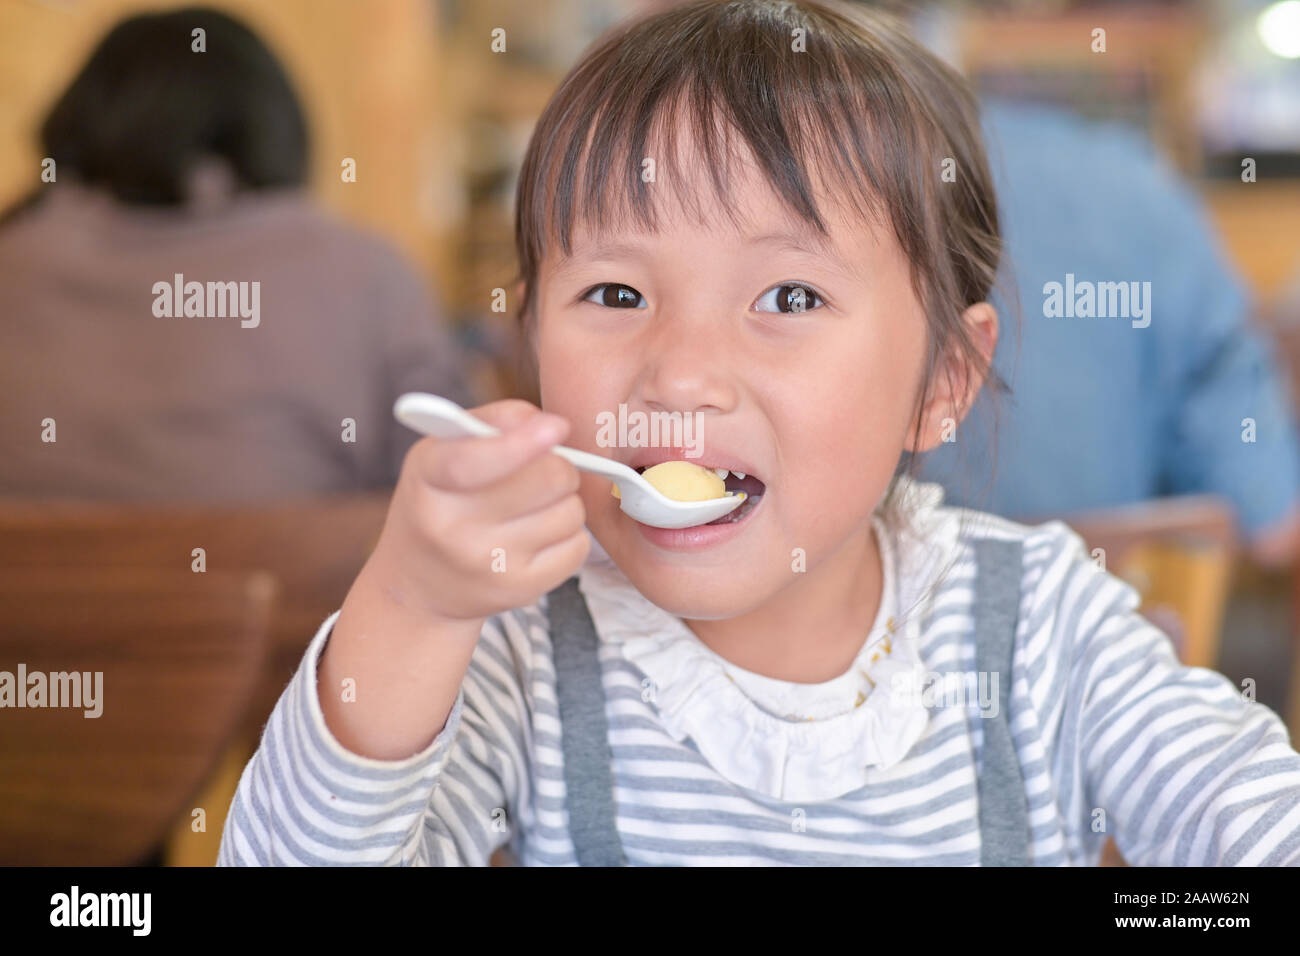 Little asian child girl having lunch on table in restaurant Stock Photo